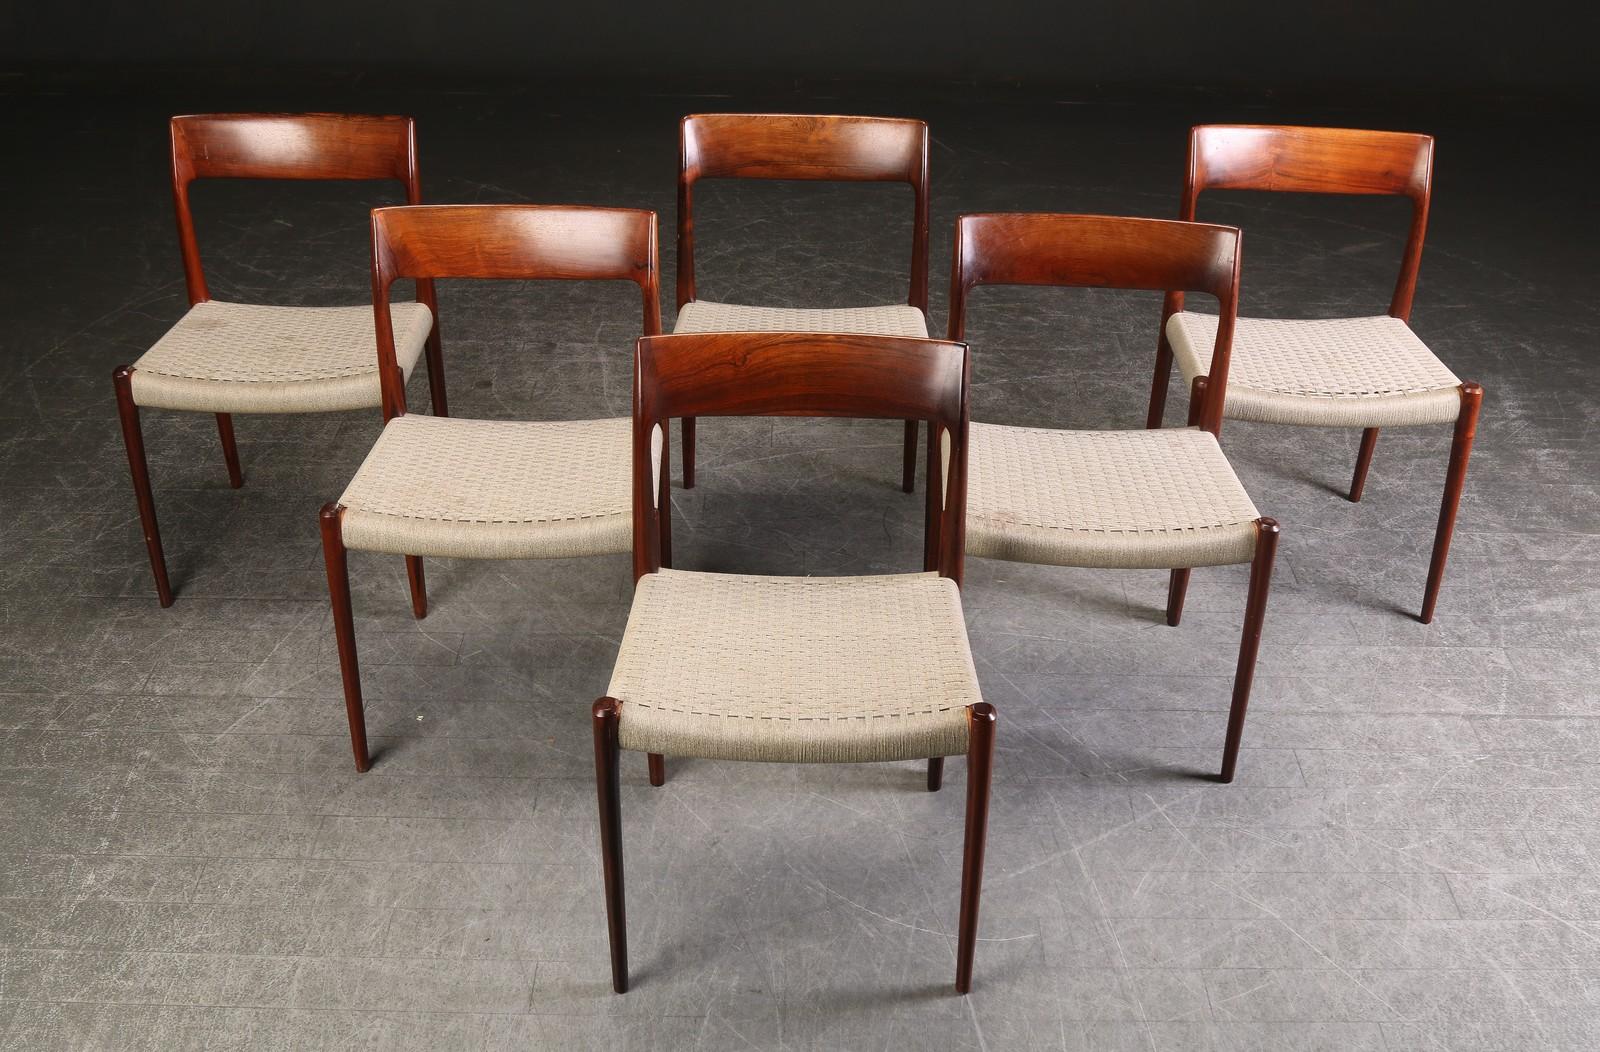 Dieser Satz von zwölf Esszimmerstühlen von Niels Otto Moller mit Sitzflächen aus gewebter grauer Wolle besteht aus zwei Sätzen von je sechs Stühlen. Das runde Label datiert diese Stühle auf die Zeit zwischen 1958 und 1969. 

Die graue, gewebte